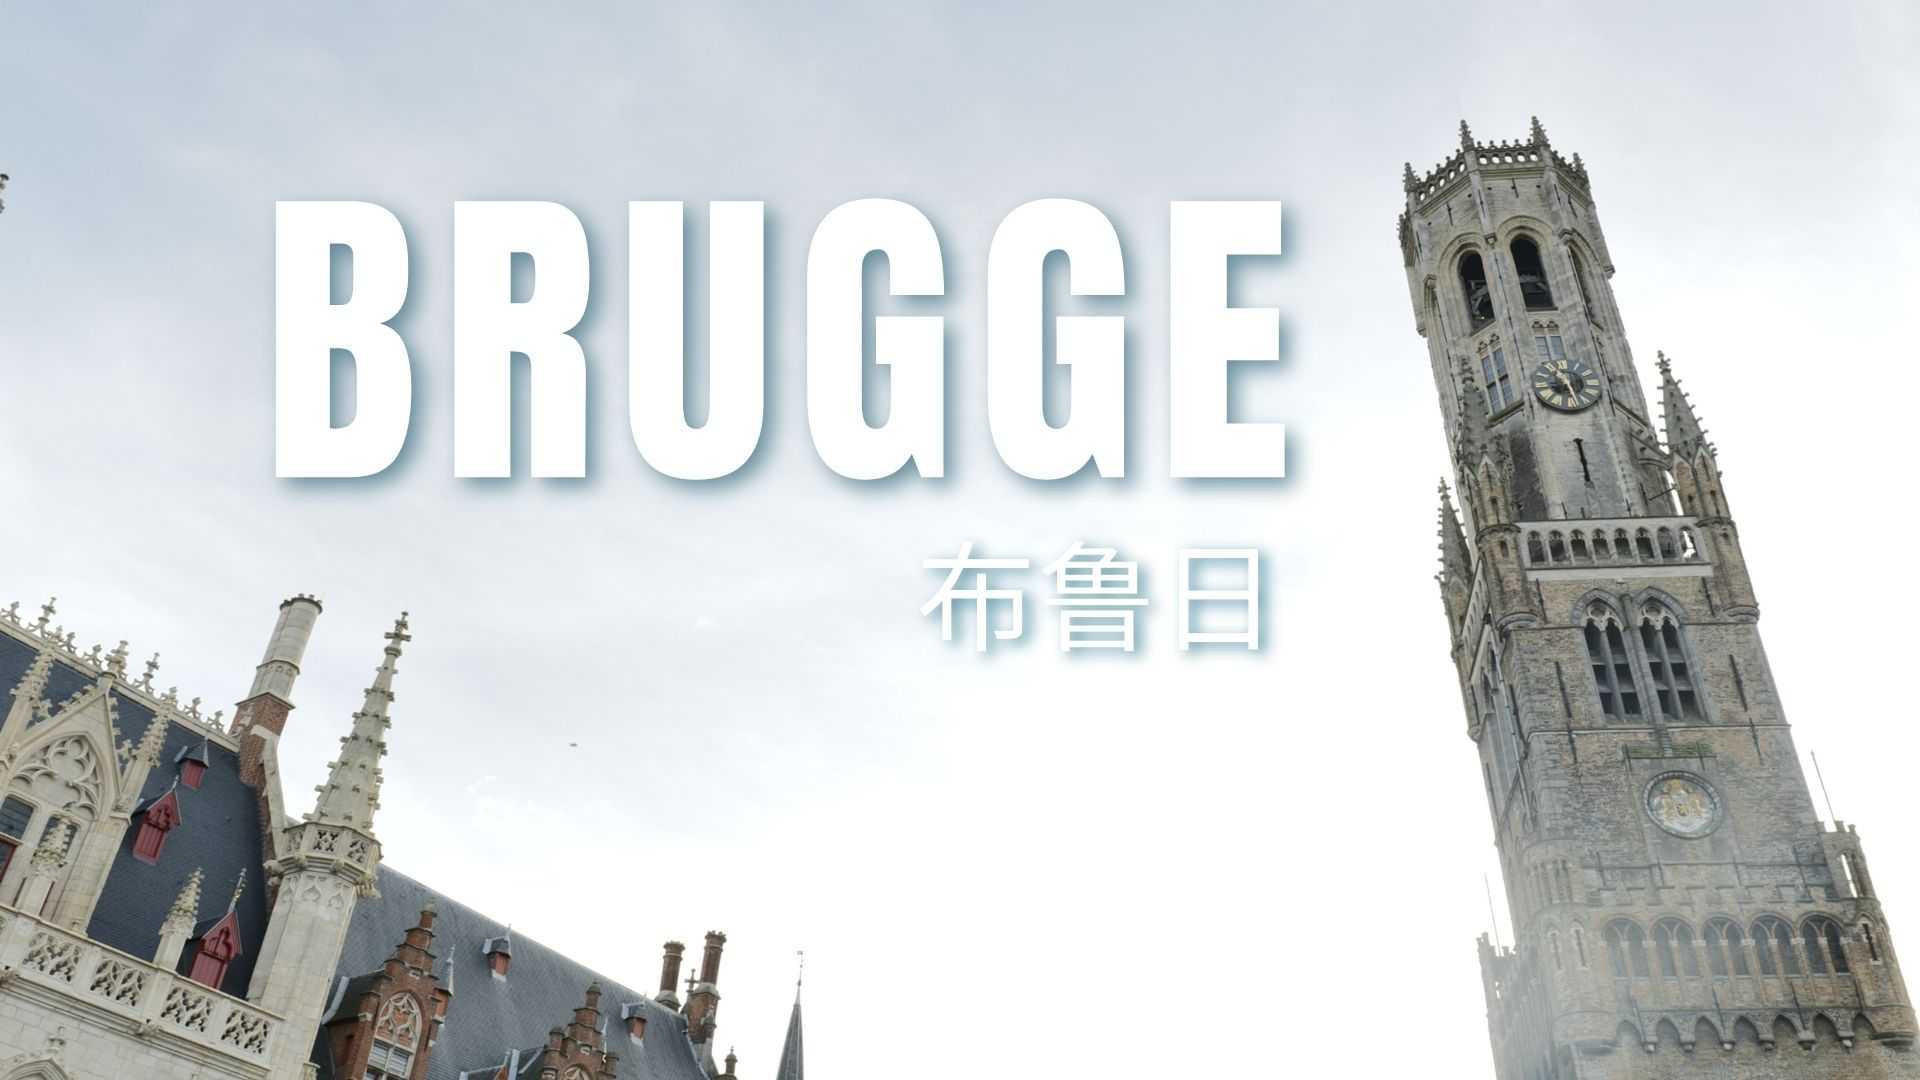 比利时 布鲁日 - Brugge